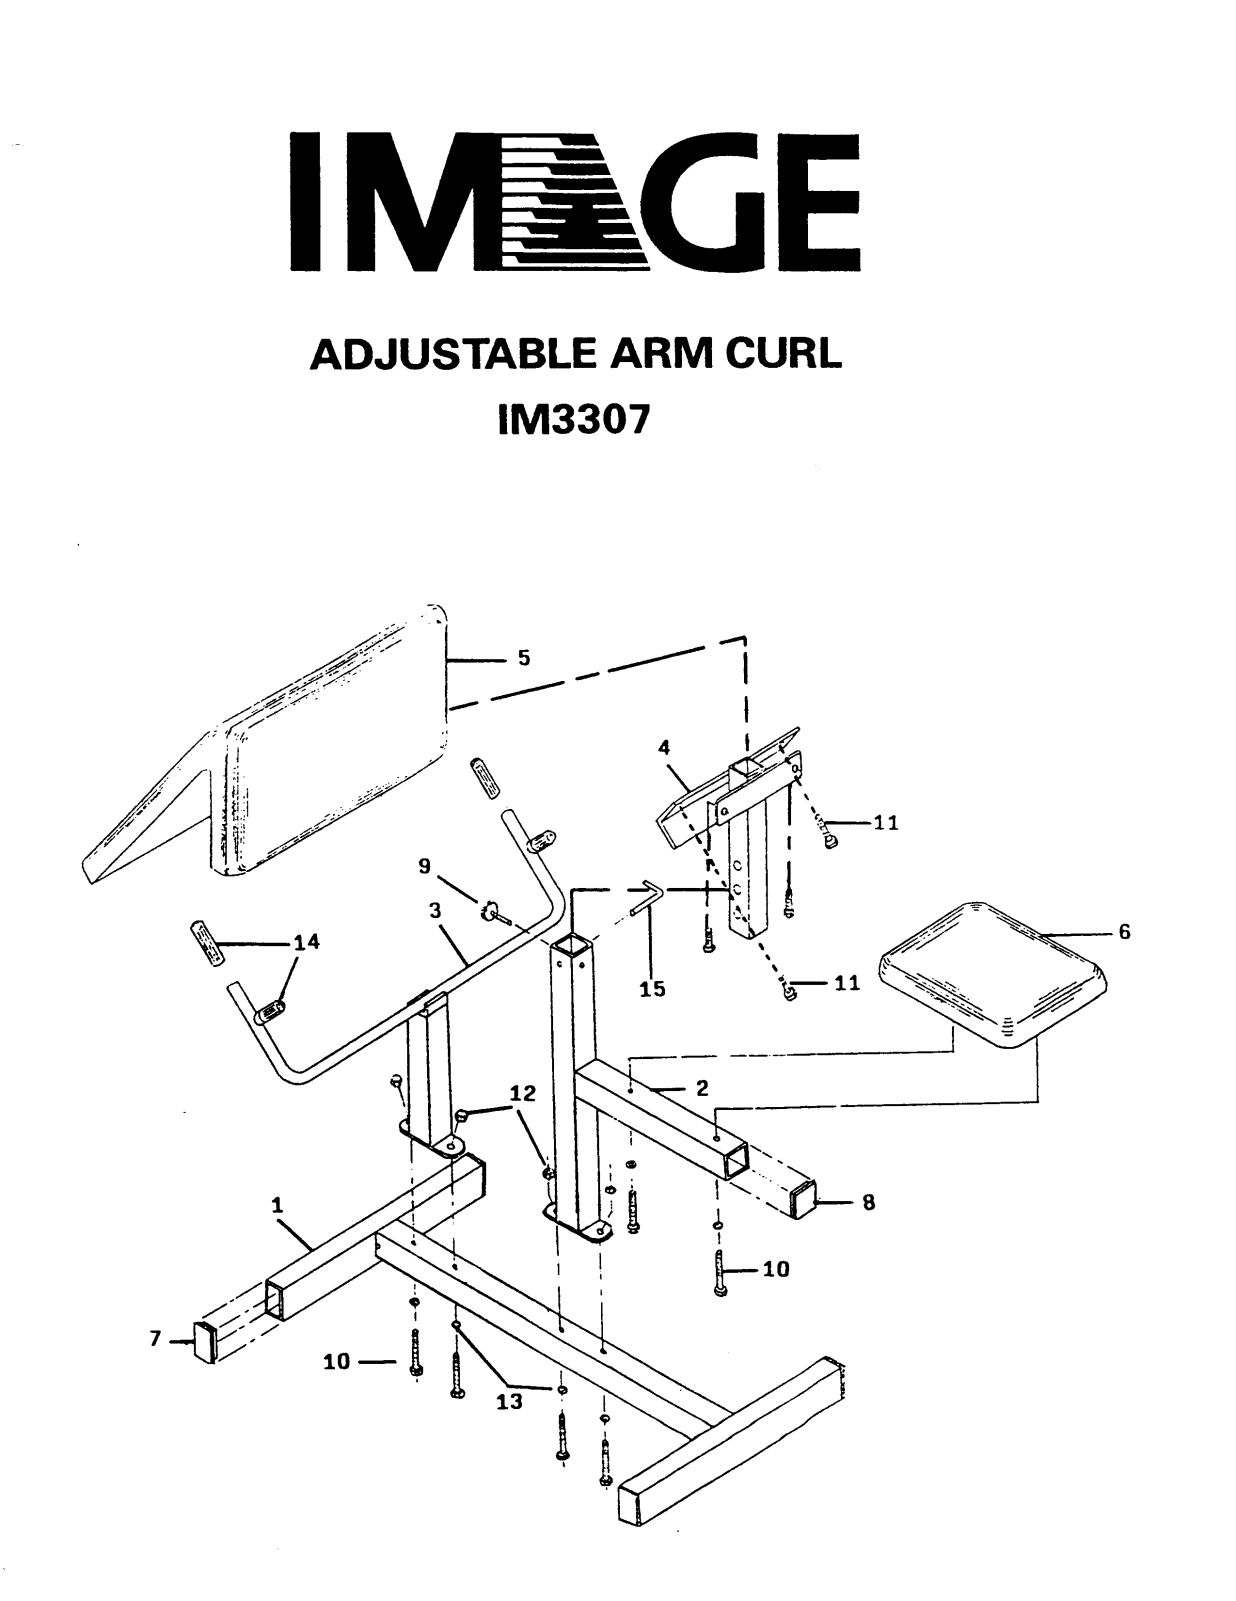 Image IM33070 Assembly Instruction